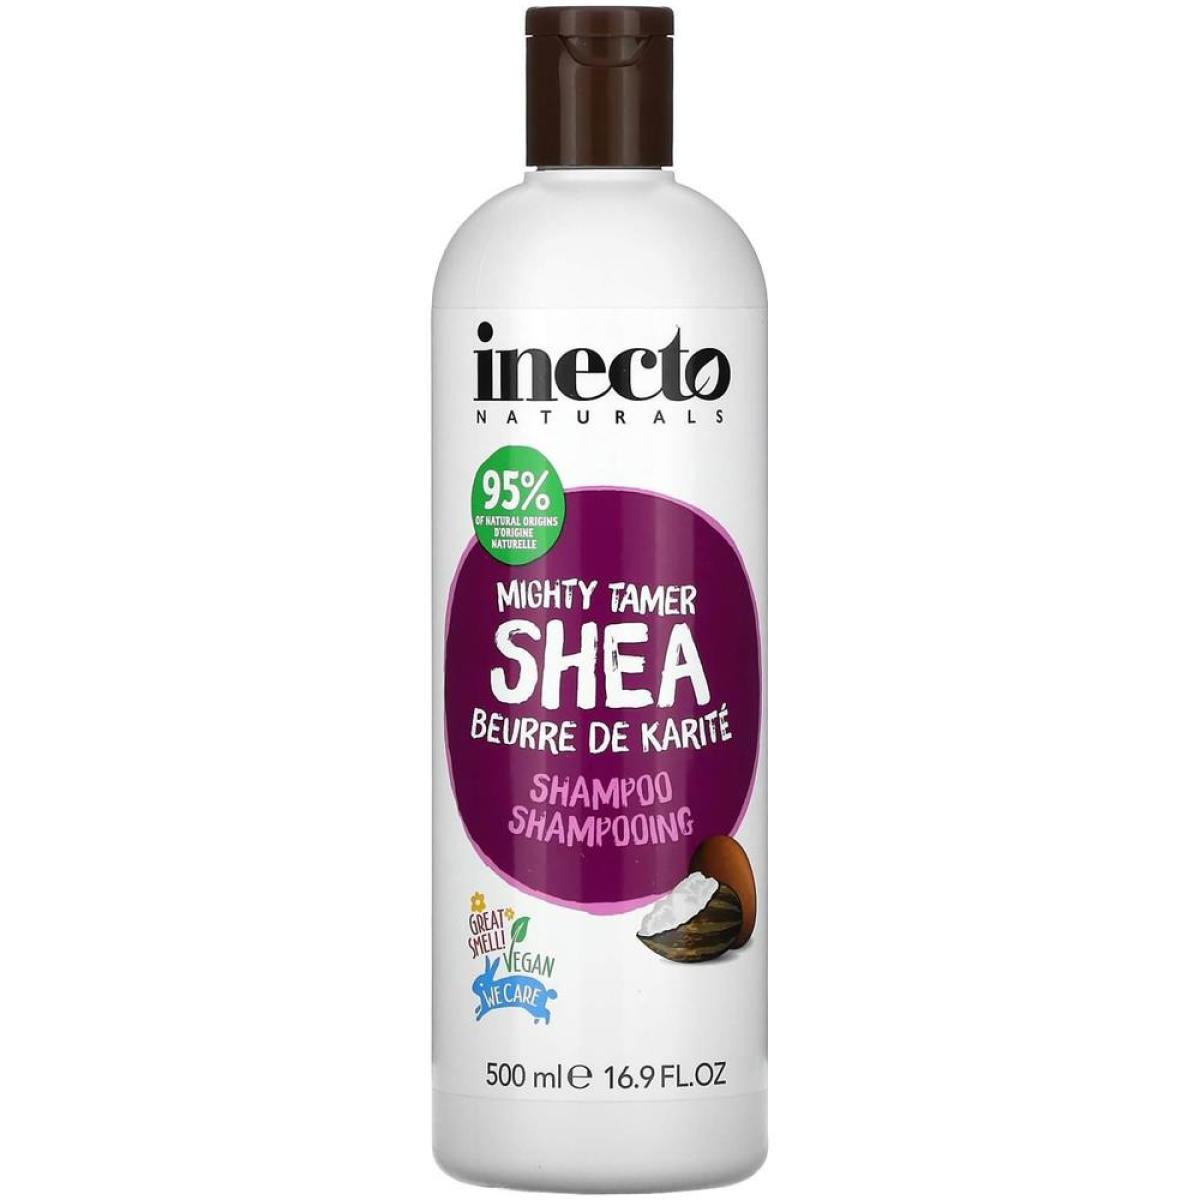 شامپو شی باتر مخصوص مو فر - Shea shampoo